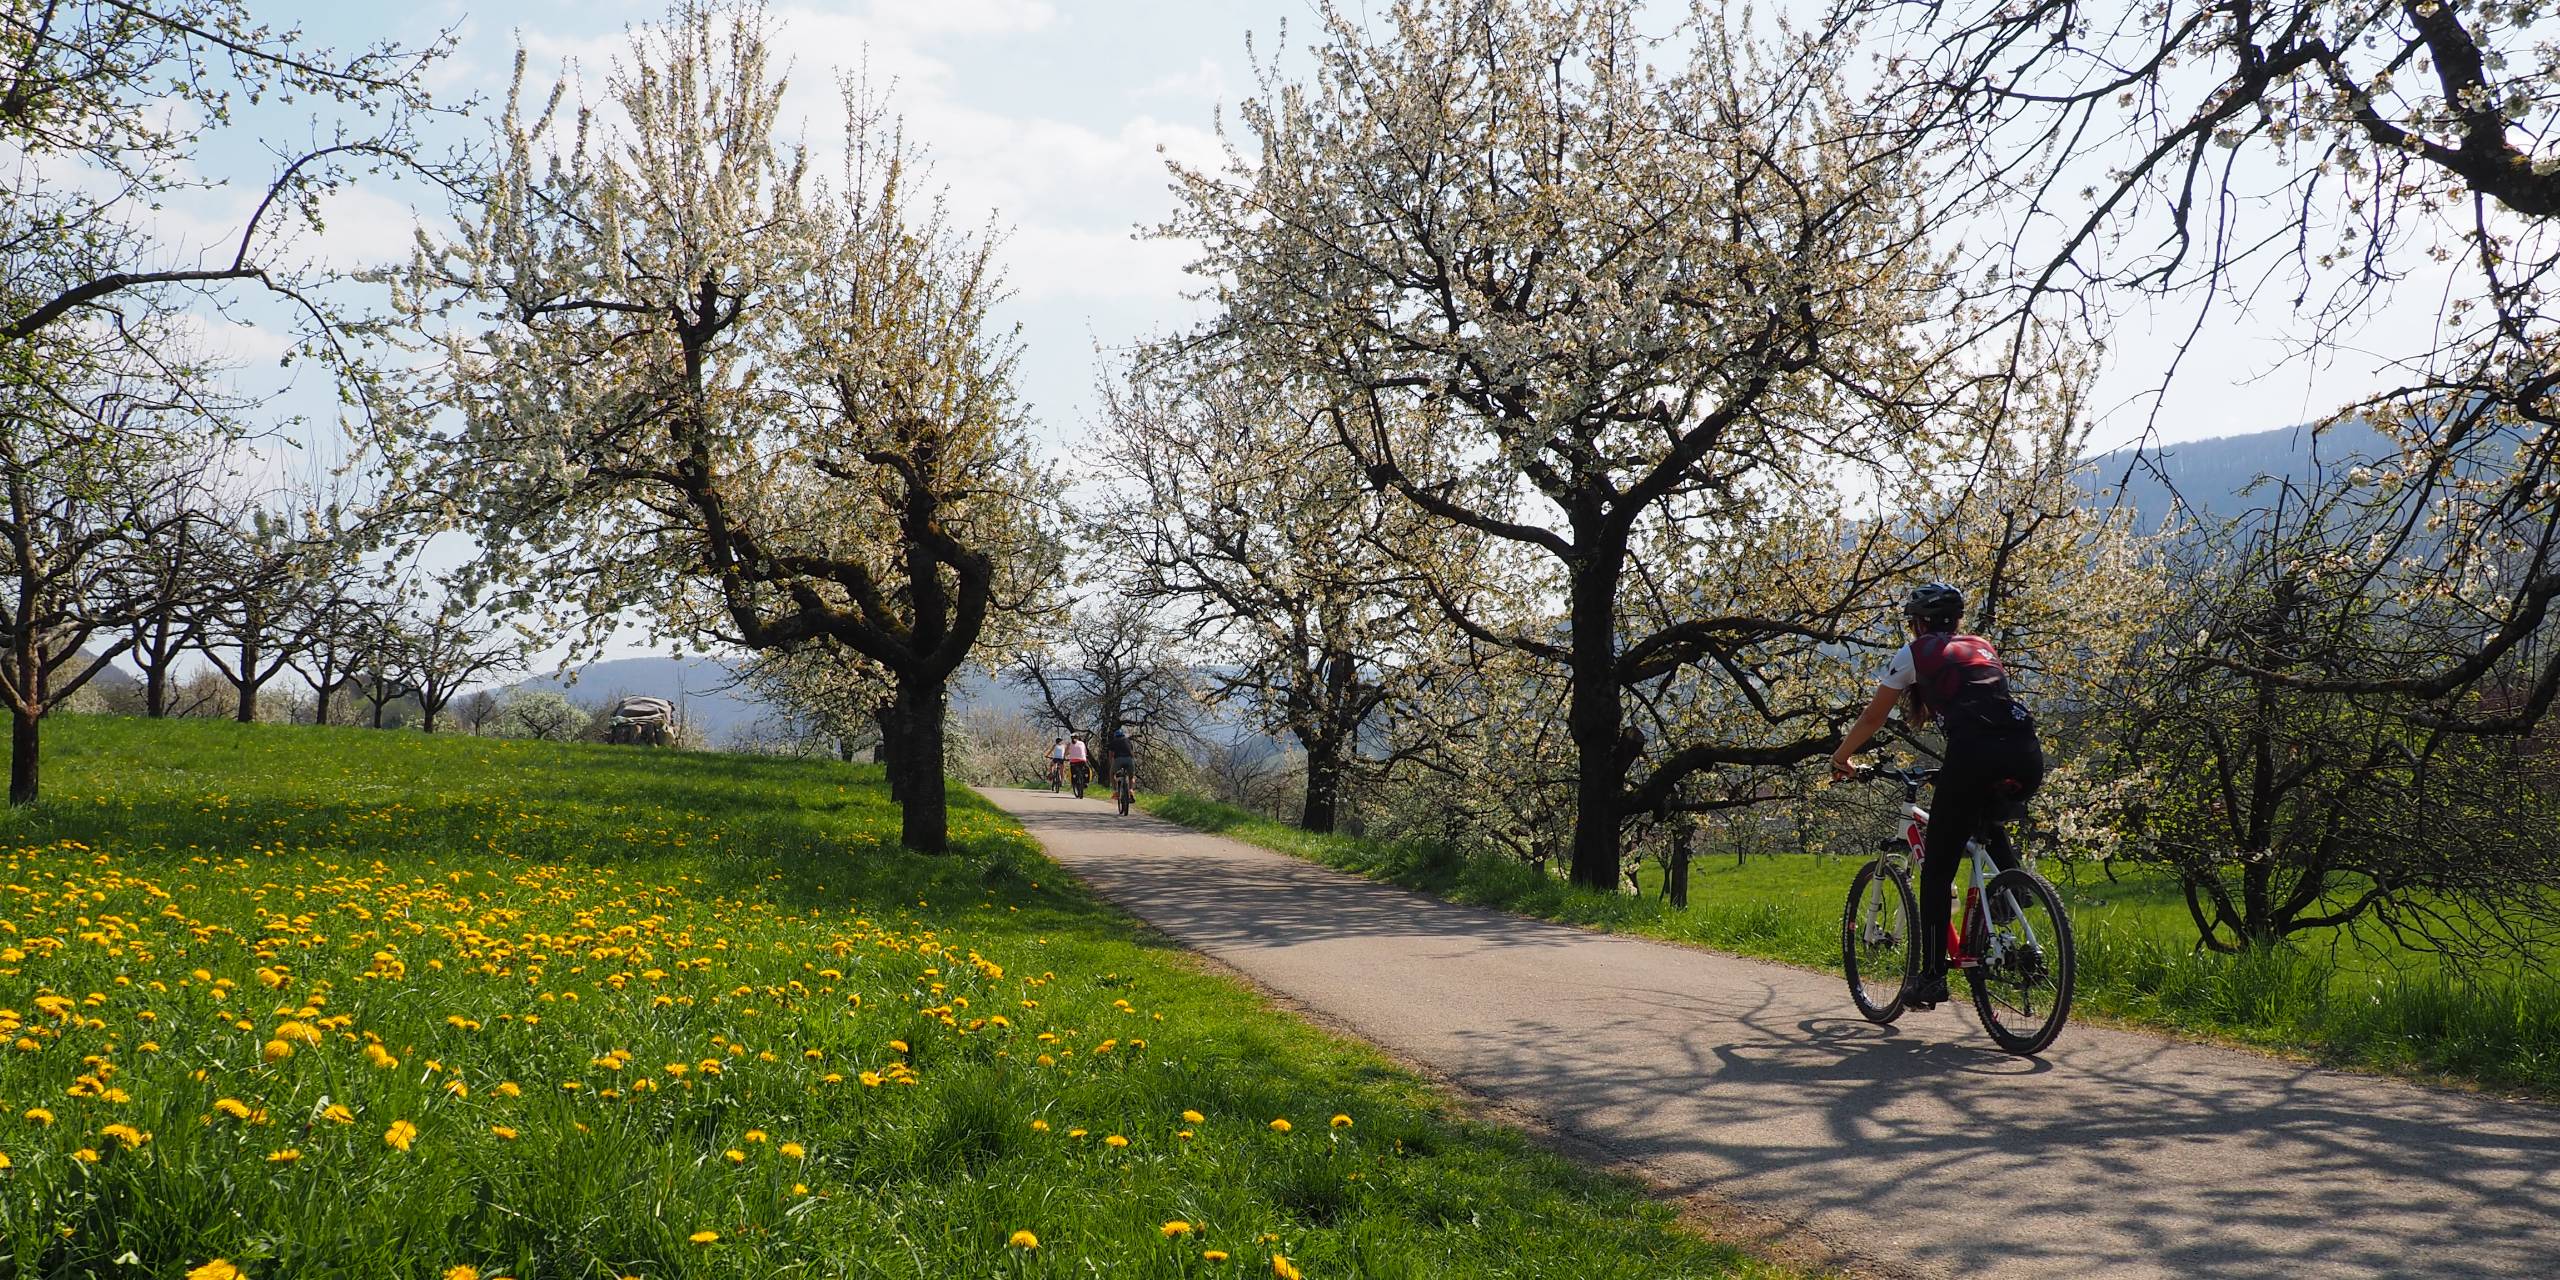 Radfahrer fahren auf einem Radweg zwischen blühenden Bäumen